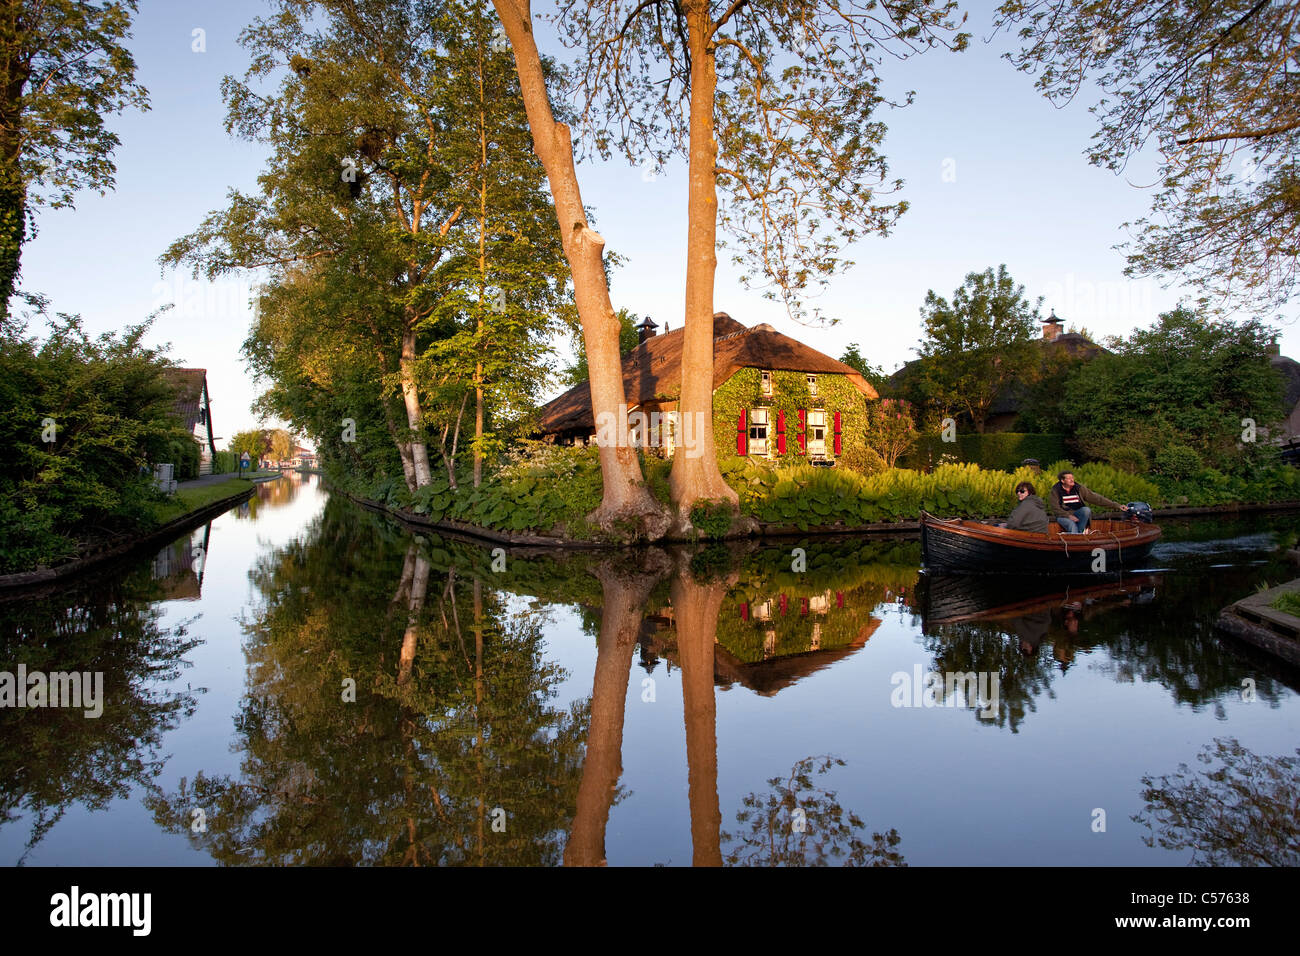 Die Niederlande, Giethoorn, Dorf mit fast nur Wasserstraßen. Touristen genießen Bootsfahrt. Stockfoto